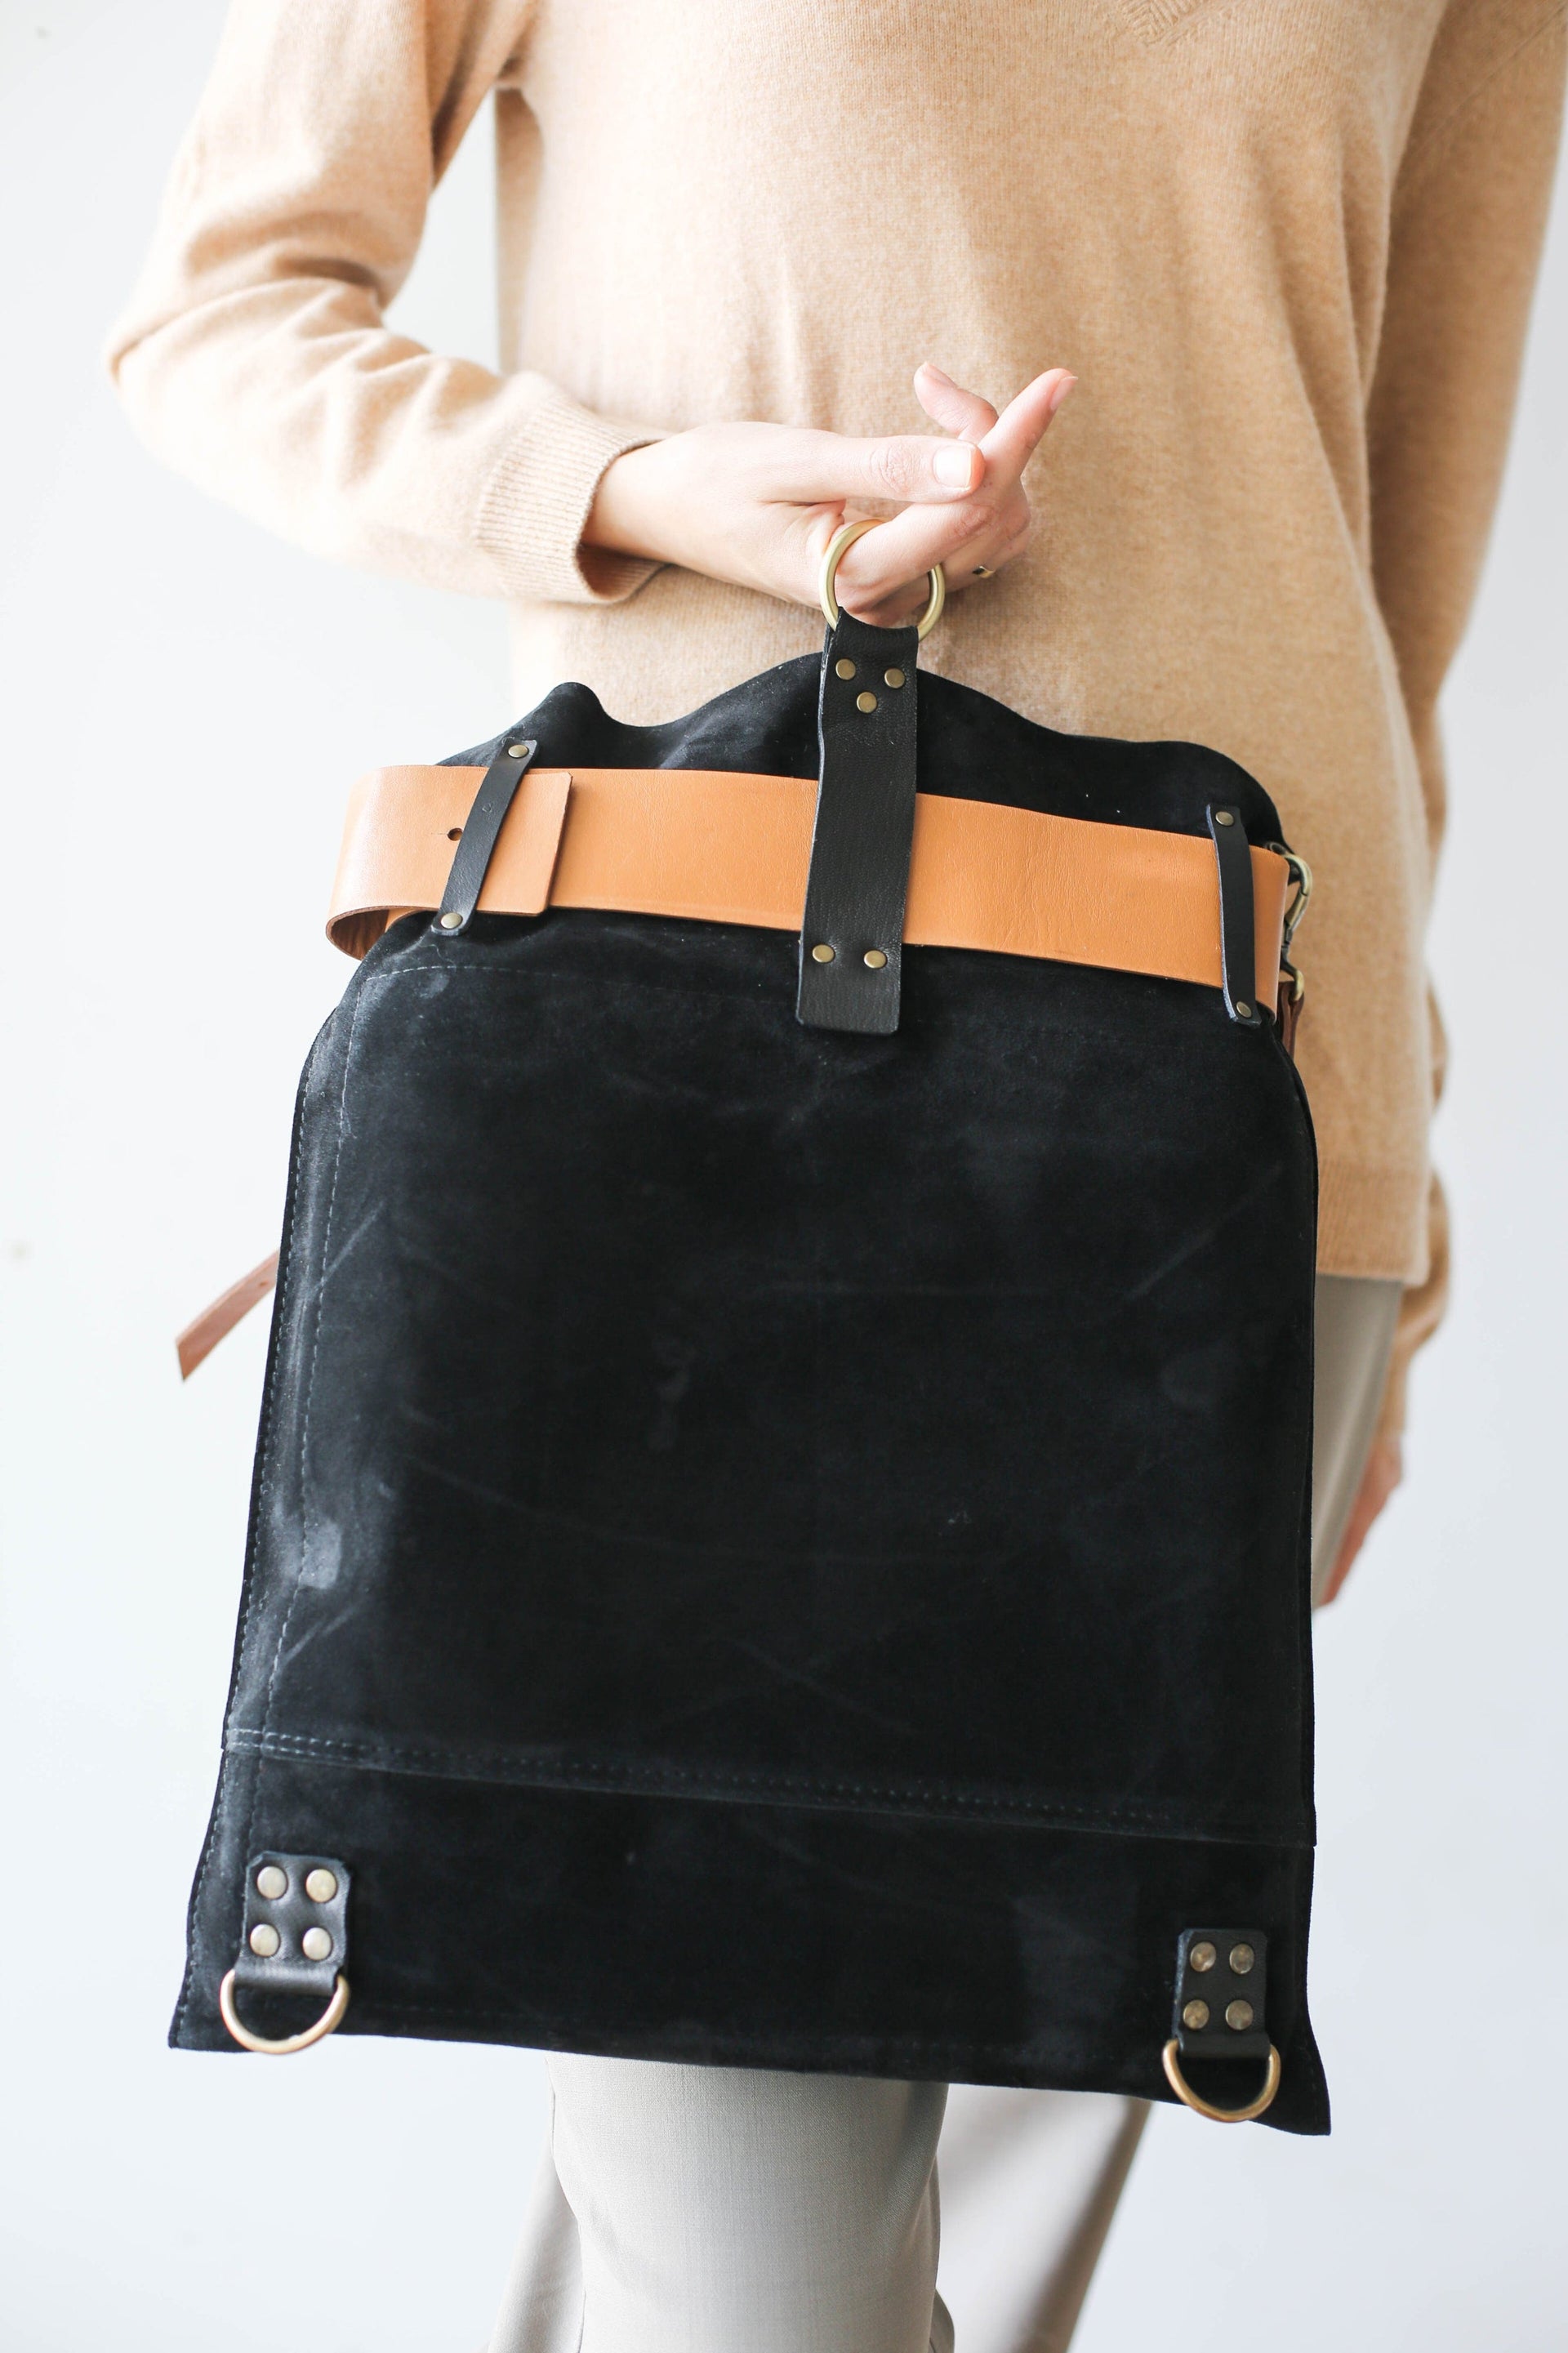 Stylish Leather backpack Purse